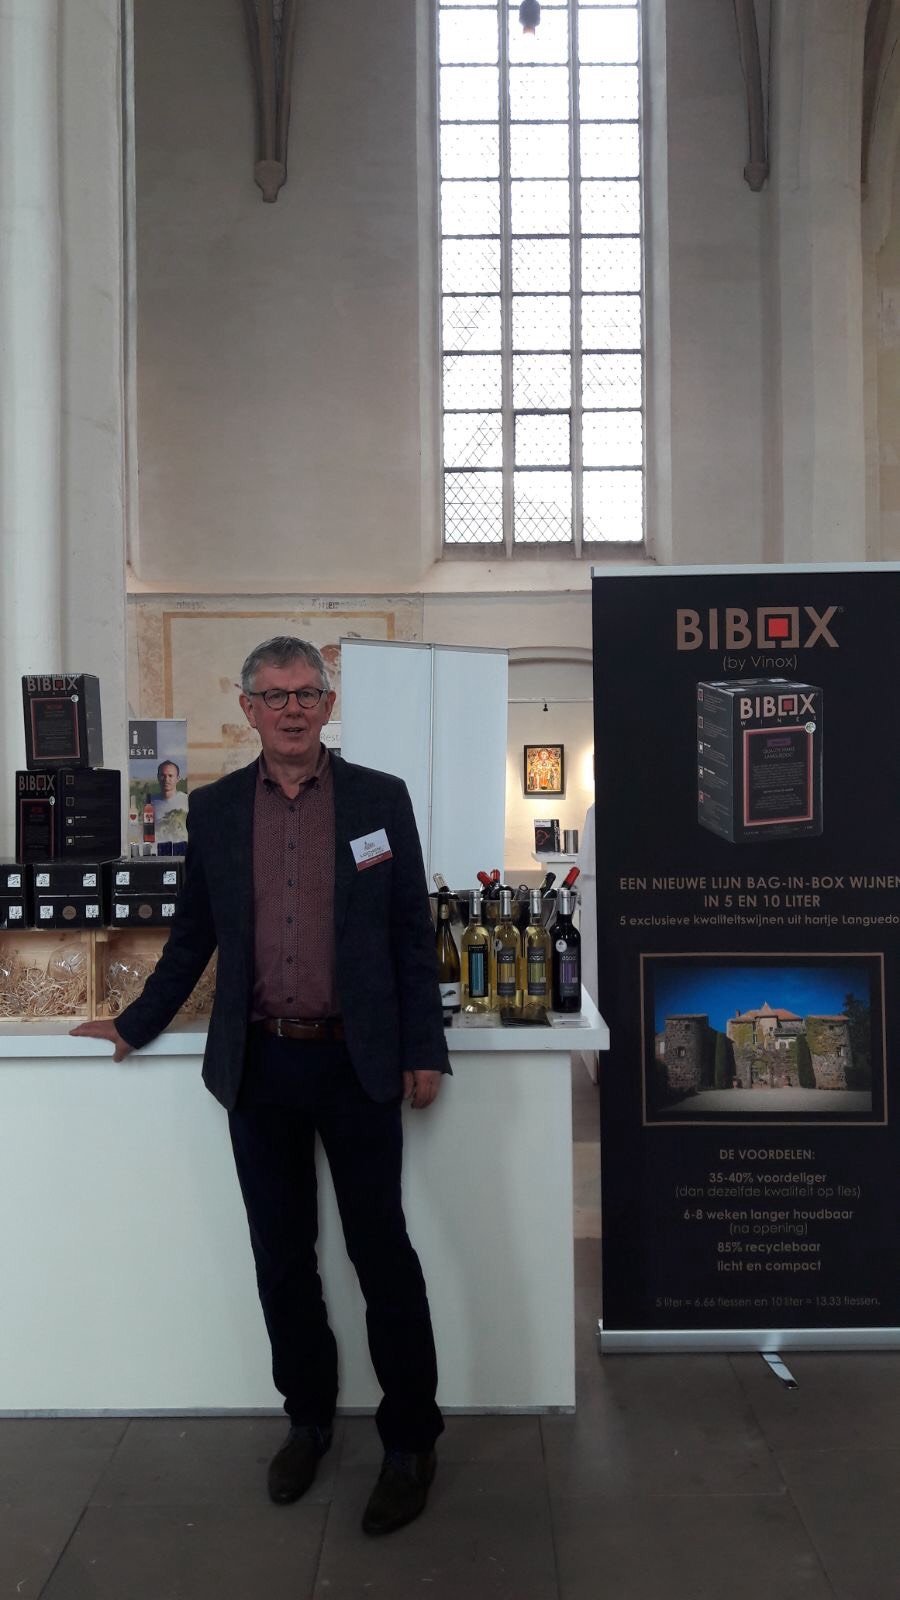 Cees Lochem met Smaak wijnfestival 28 oktober 2017